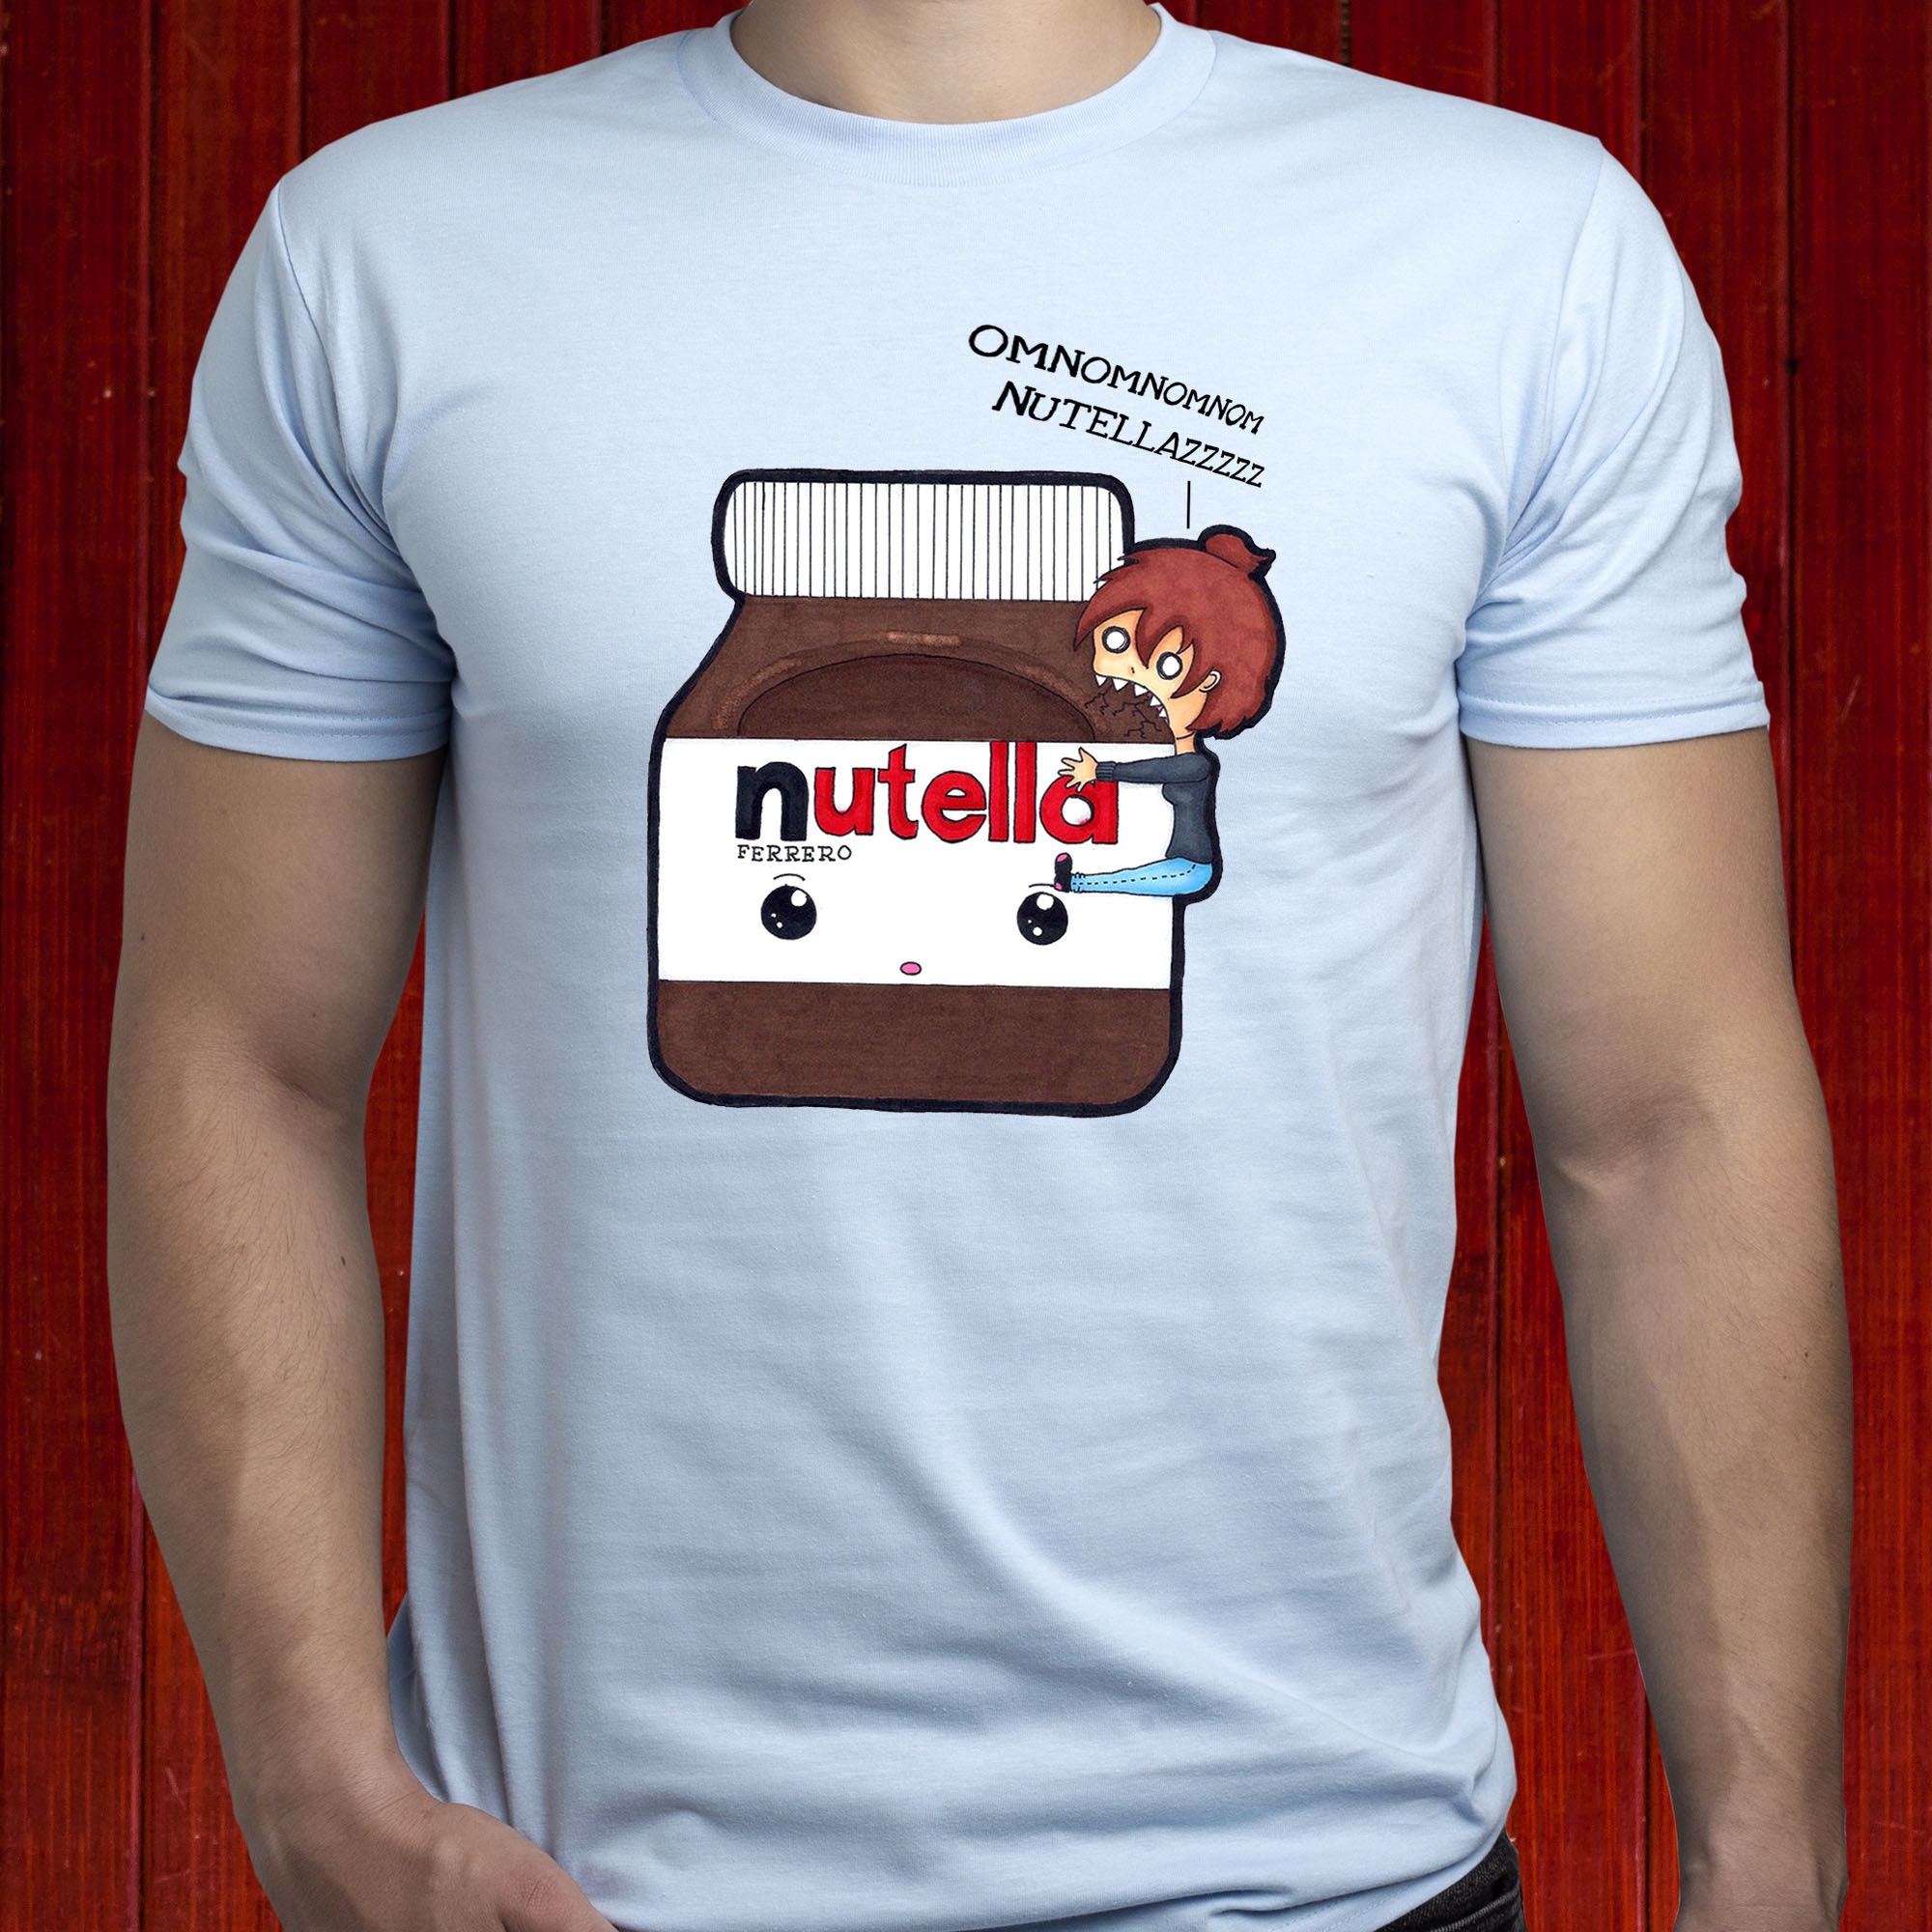 Omnomnom T-shirt/ Nutella T Shirt/ Funny Etsy